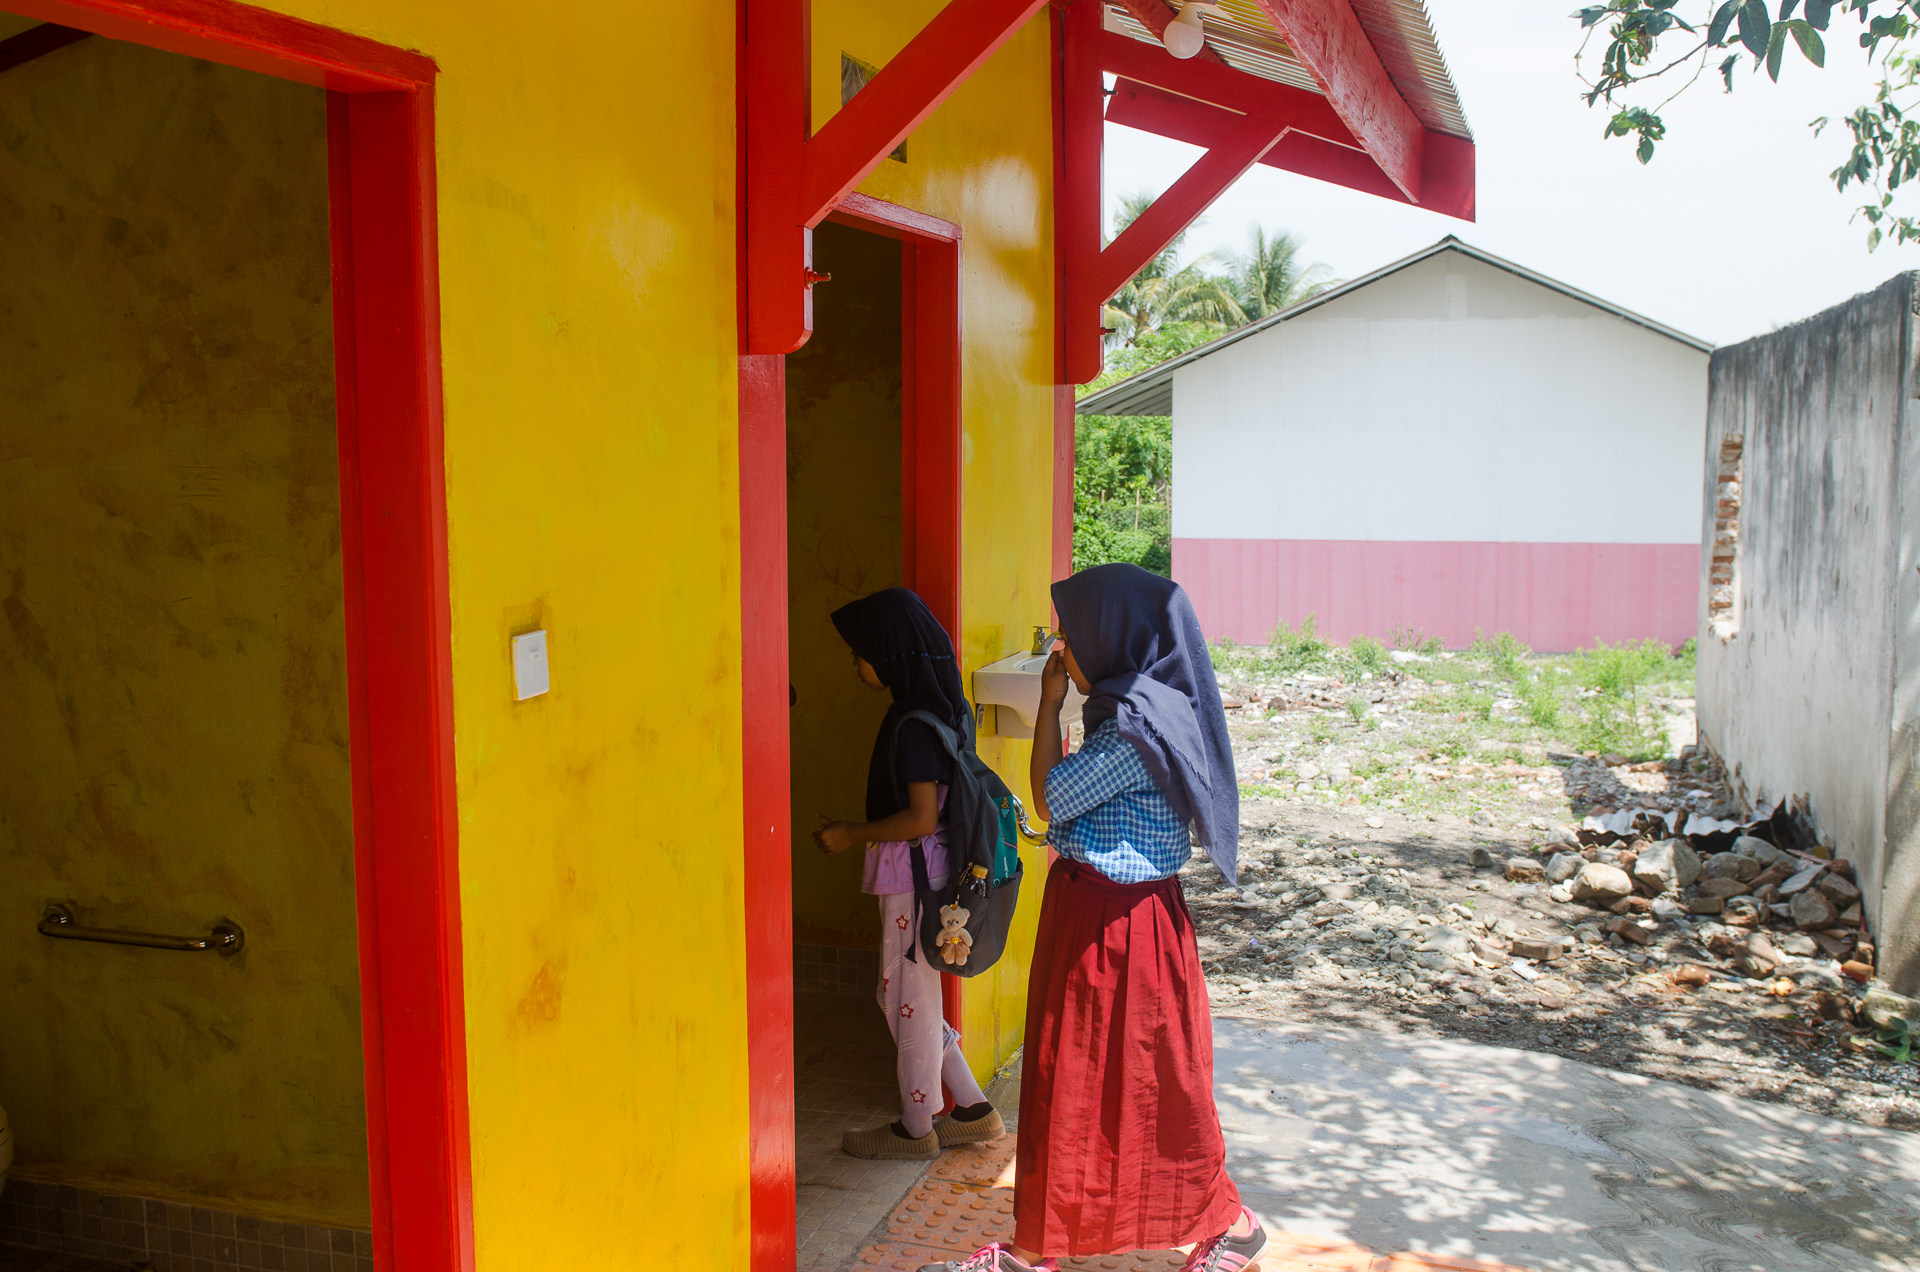 Zwei Mädchen im Schulalter betreten ein gelbes Häuschen durch eine offene Türöffnung.